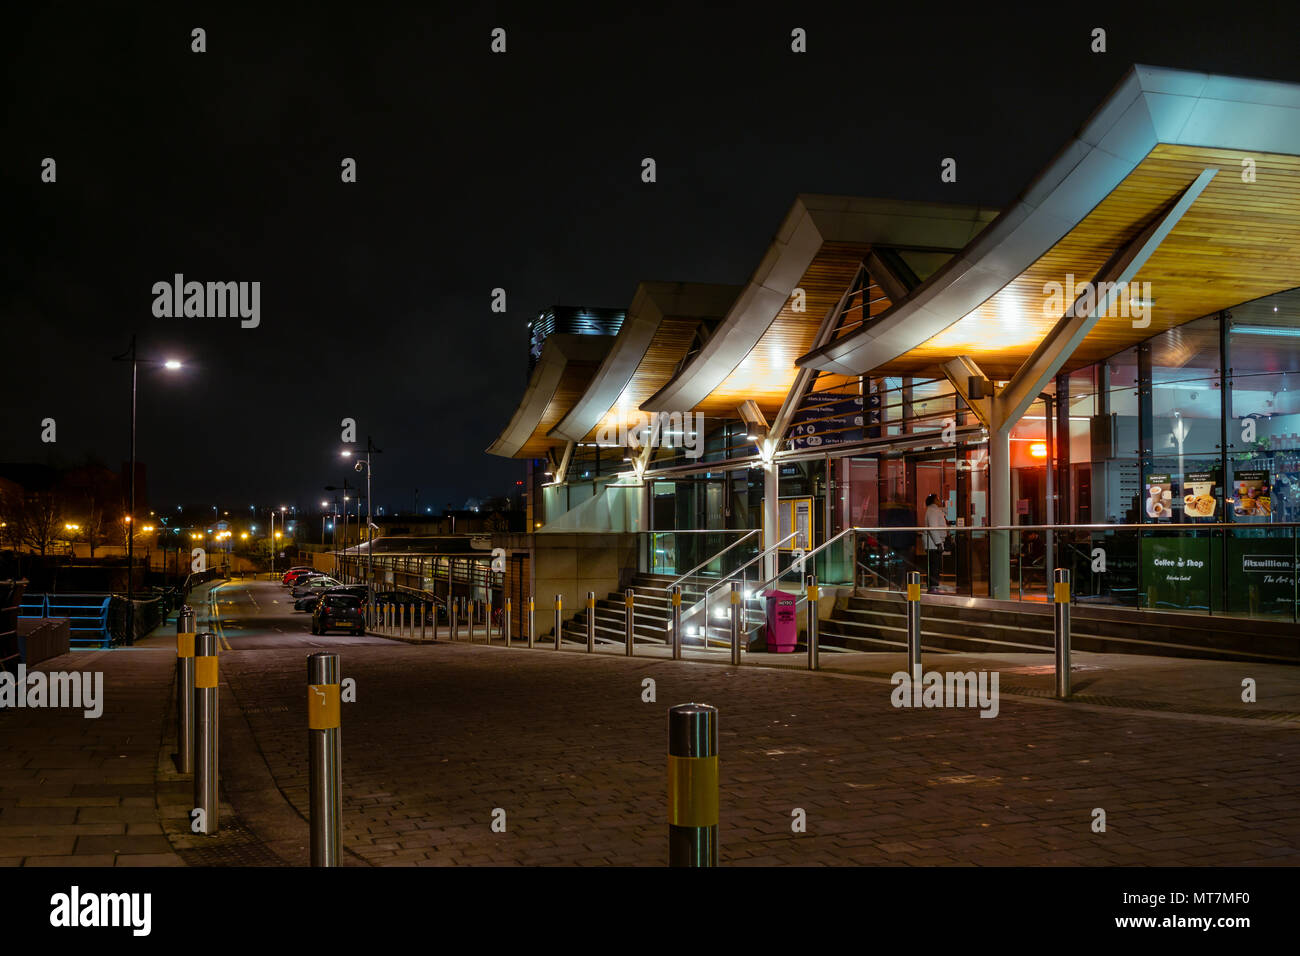 Die neue Rotherham Hauptbahnhof bei Nacht - Bahnhof Teil von Rotherham Renaissance mit modernen, zeitgenössischen Dach & Architektur Stockfoto